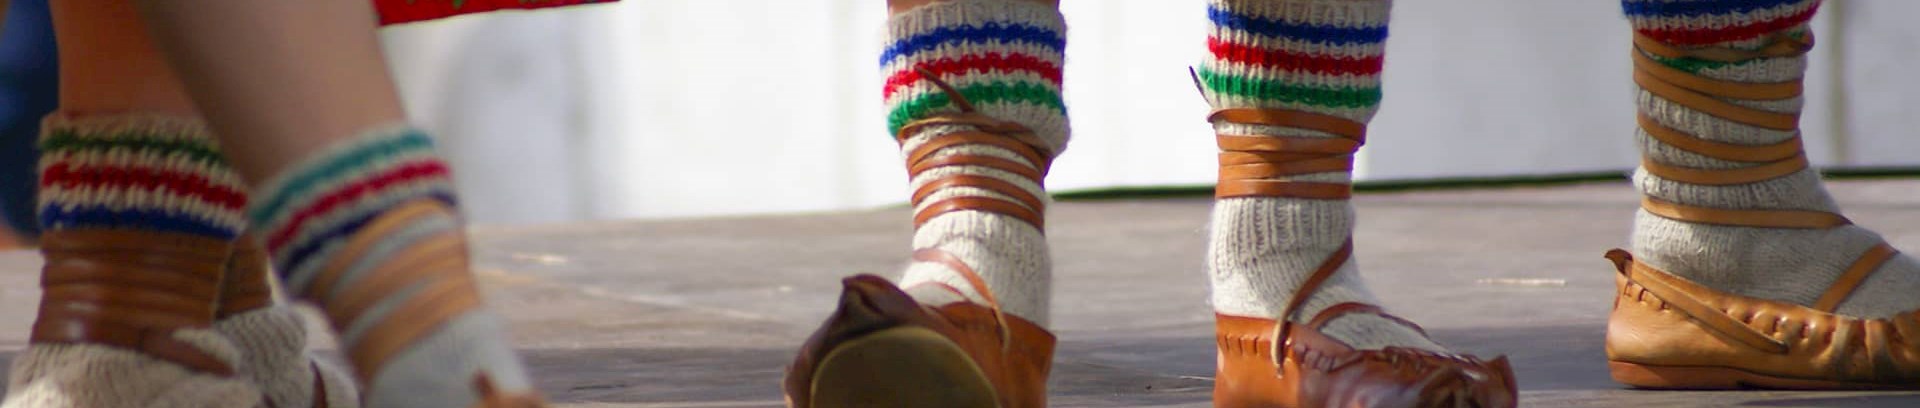 Billede af fødderne af polske folkedansere med uldne striksokker i lædersko